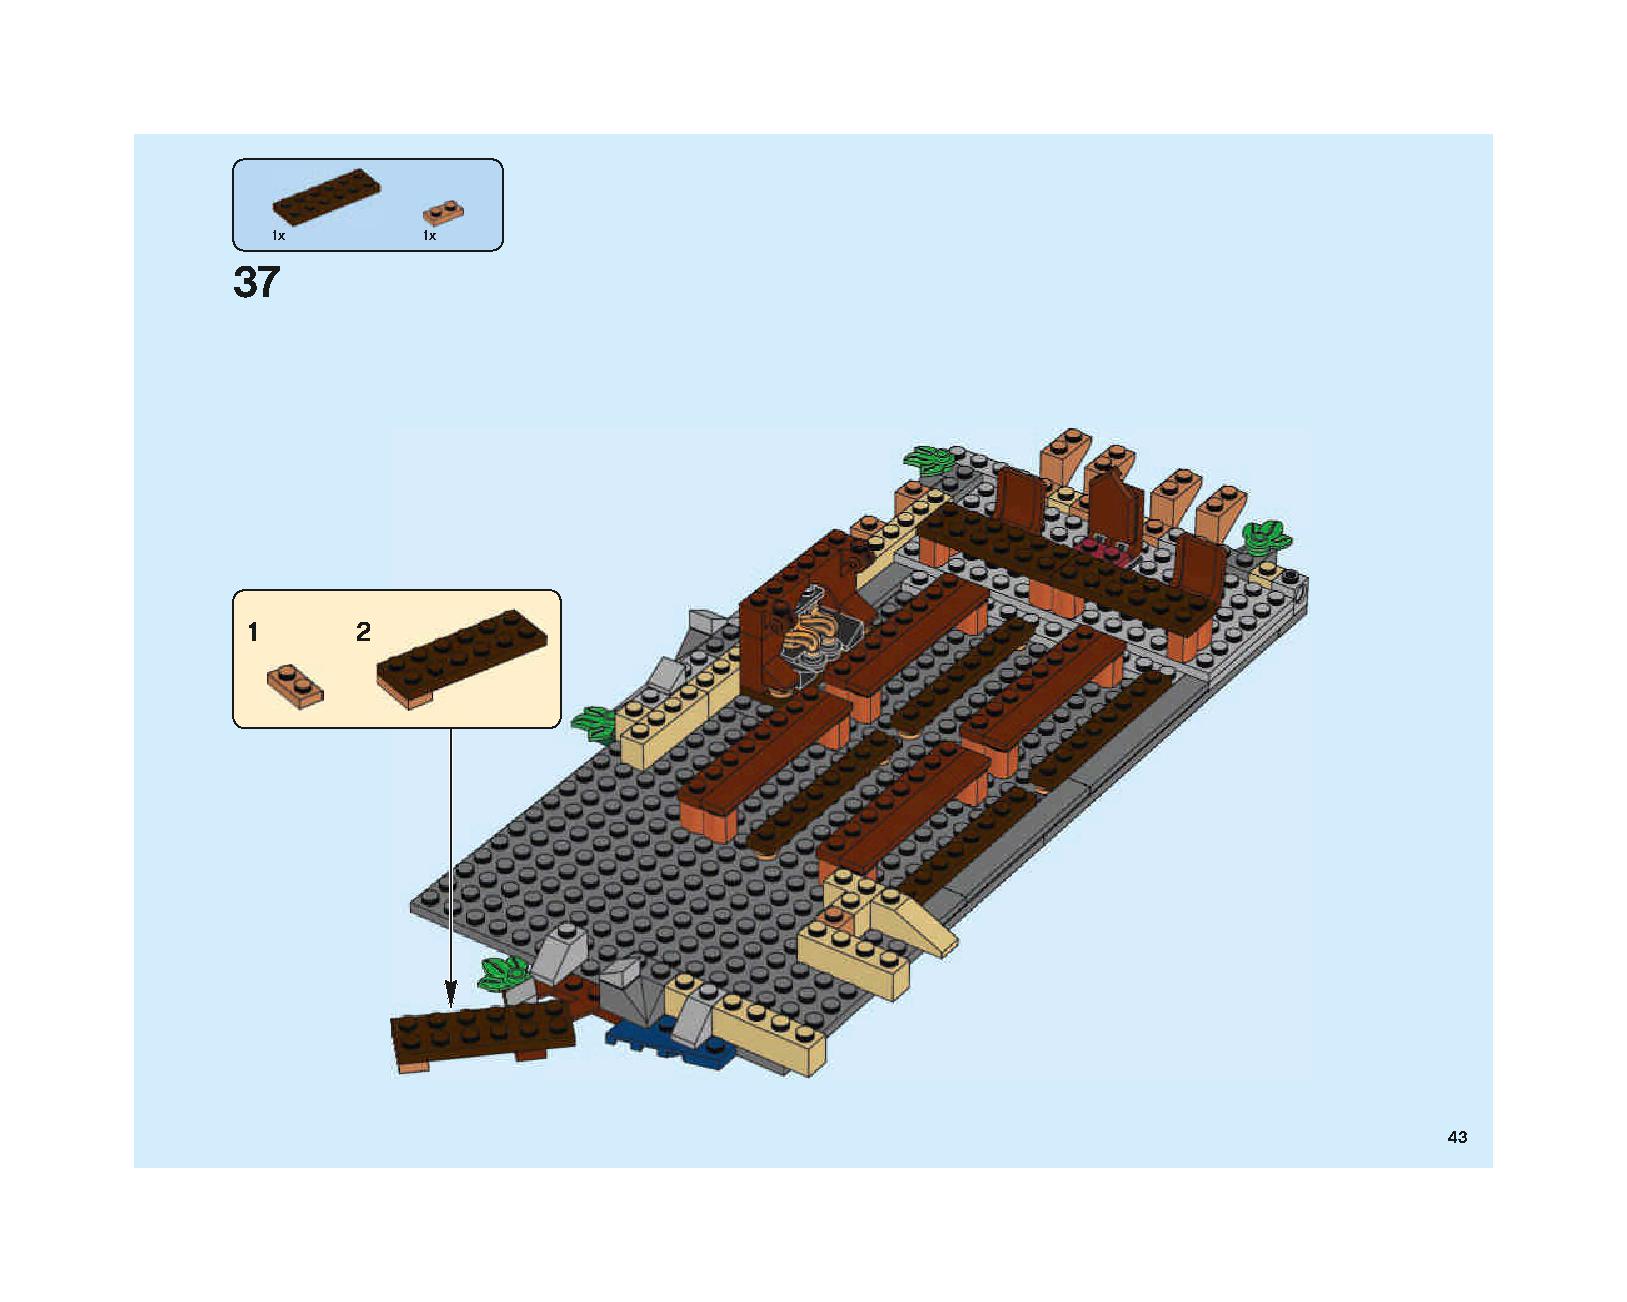 ホグワーツの大広間 75954 レゴの商品情報 レゴの説明書・組立方法 43 page